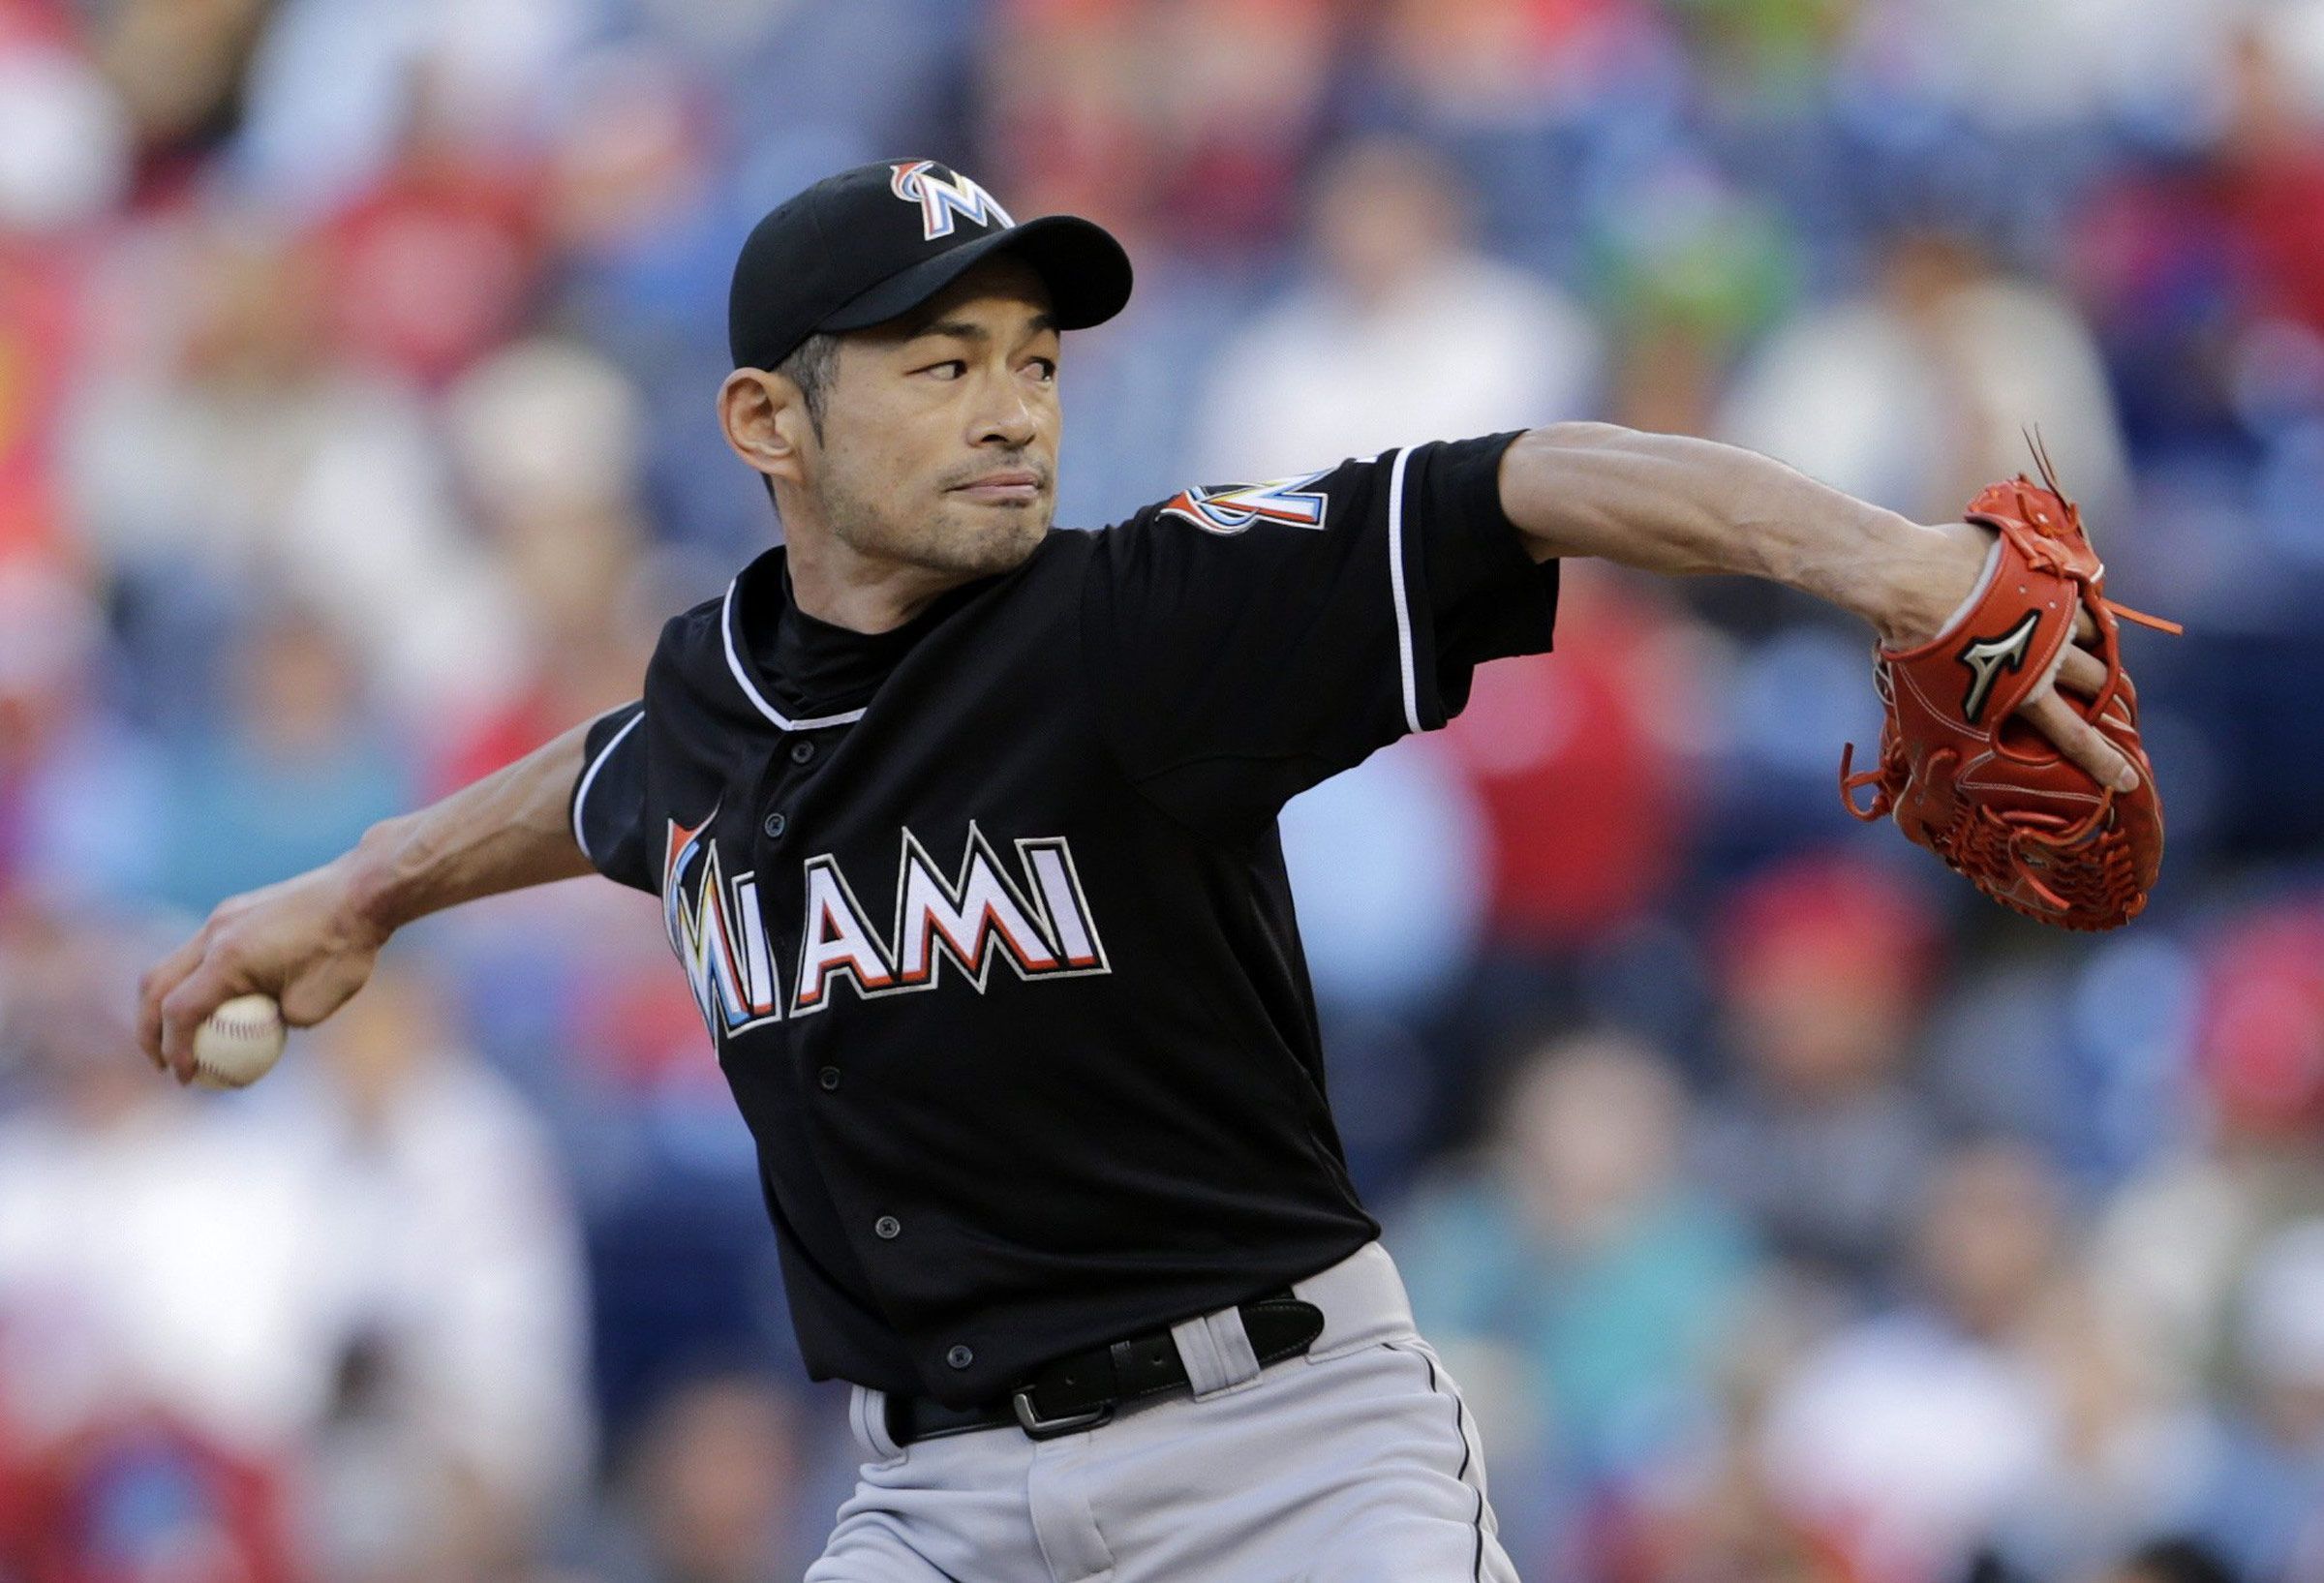 Watch: Former Mariners great Ichiro Suzuki pitches — yes, pitches